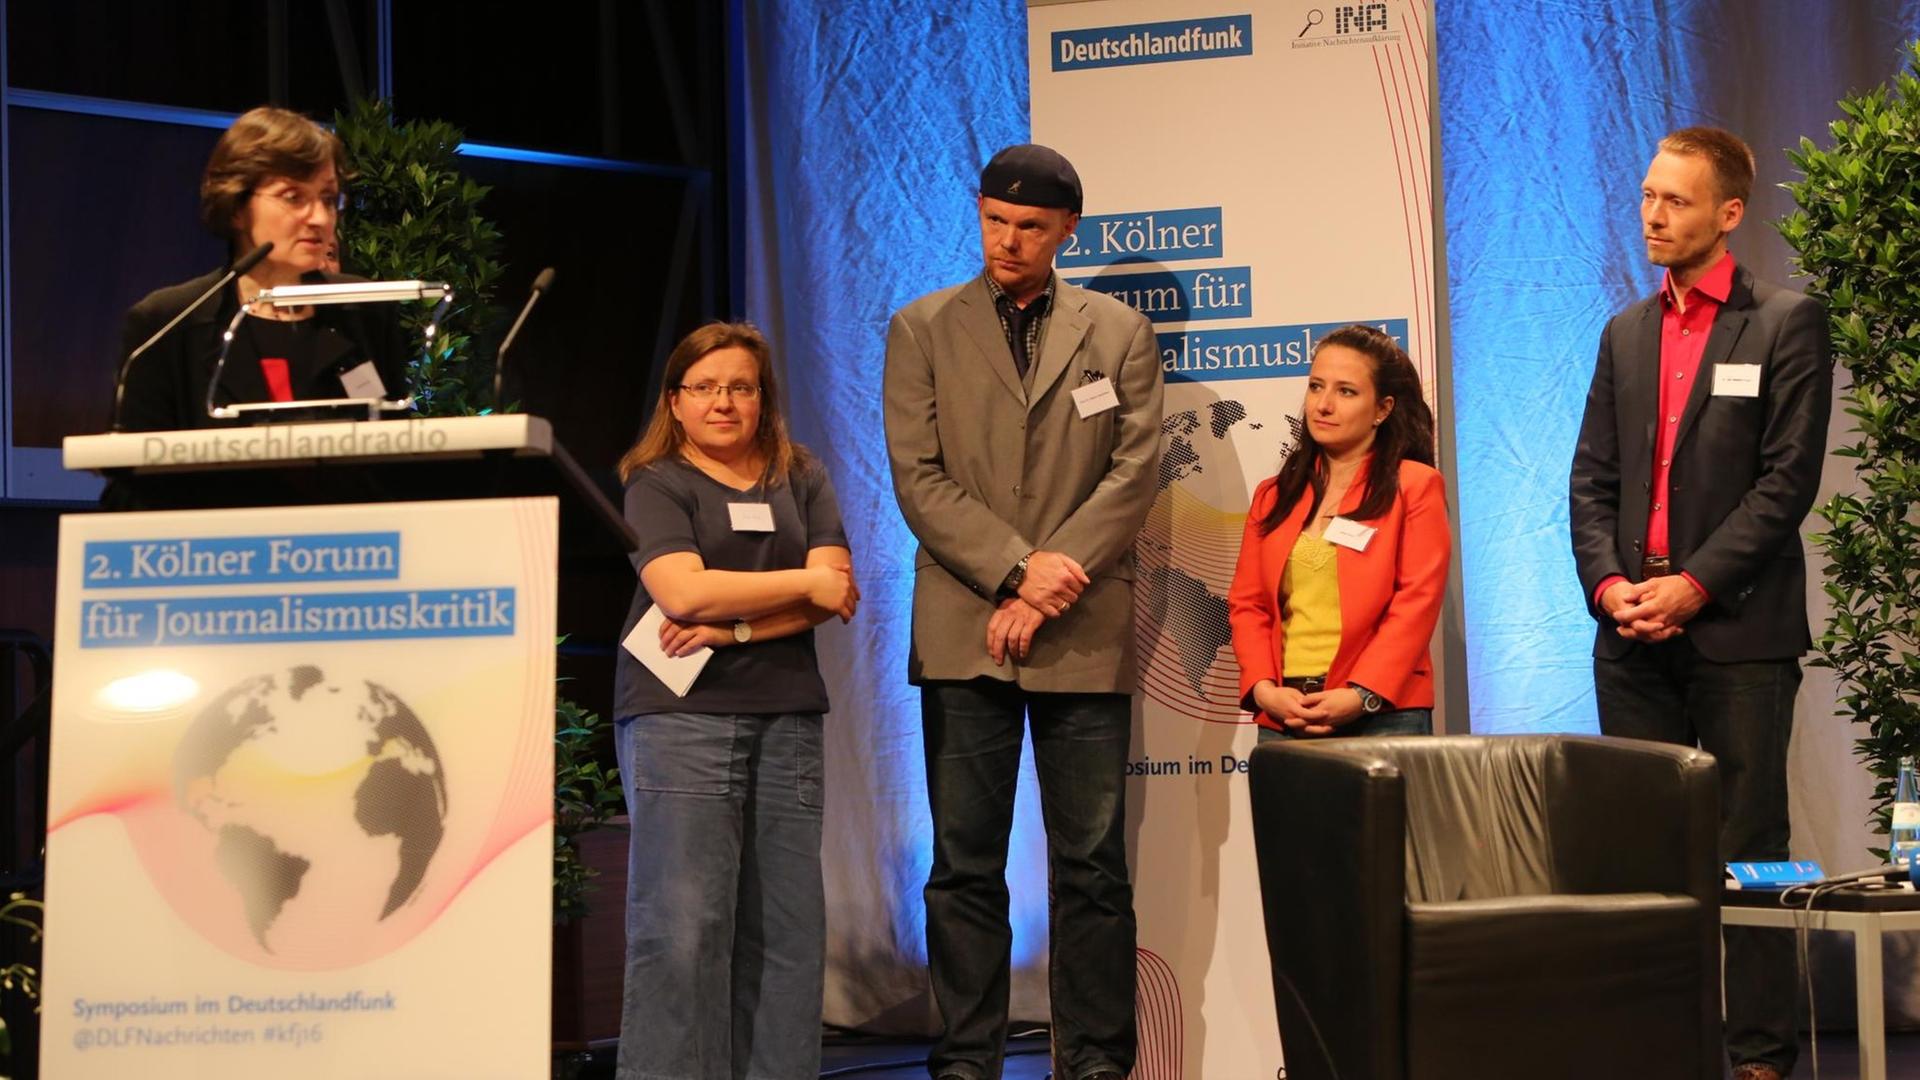 Verleihung des Günter-Wallraff-Preises für Journalismuskritik an die türkische Gruppe "Haber Nöbeti" und Uwe Krüger.